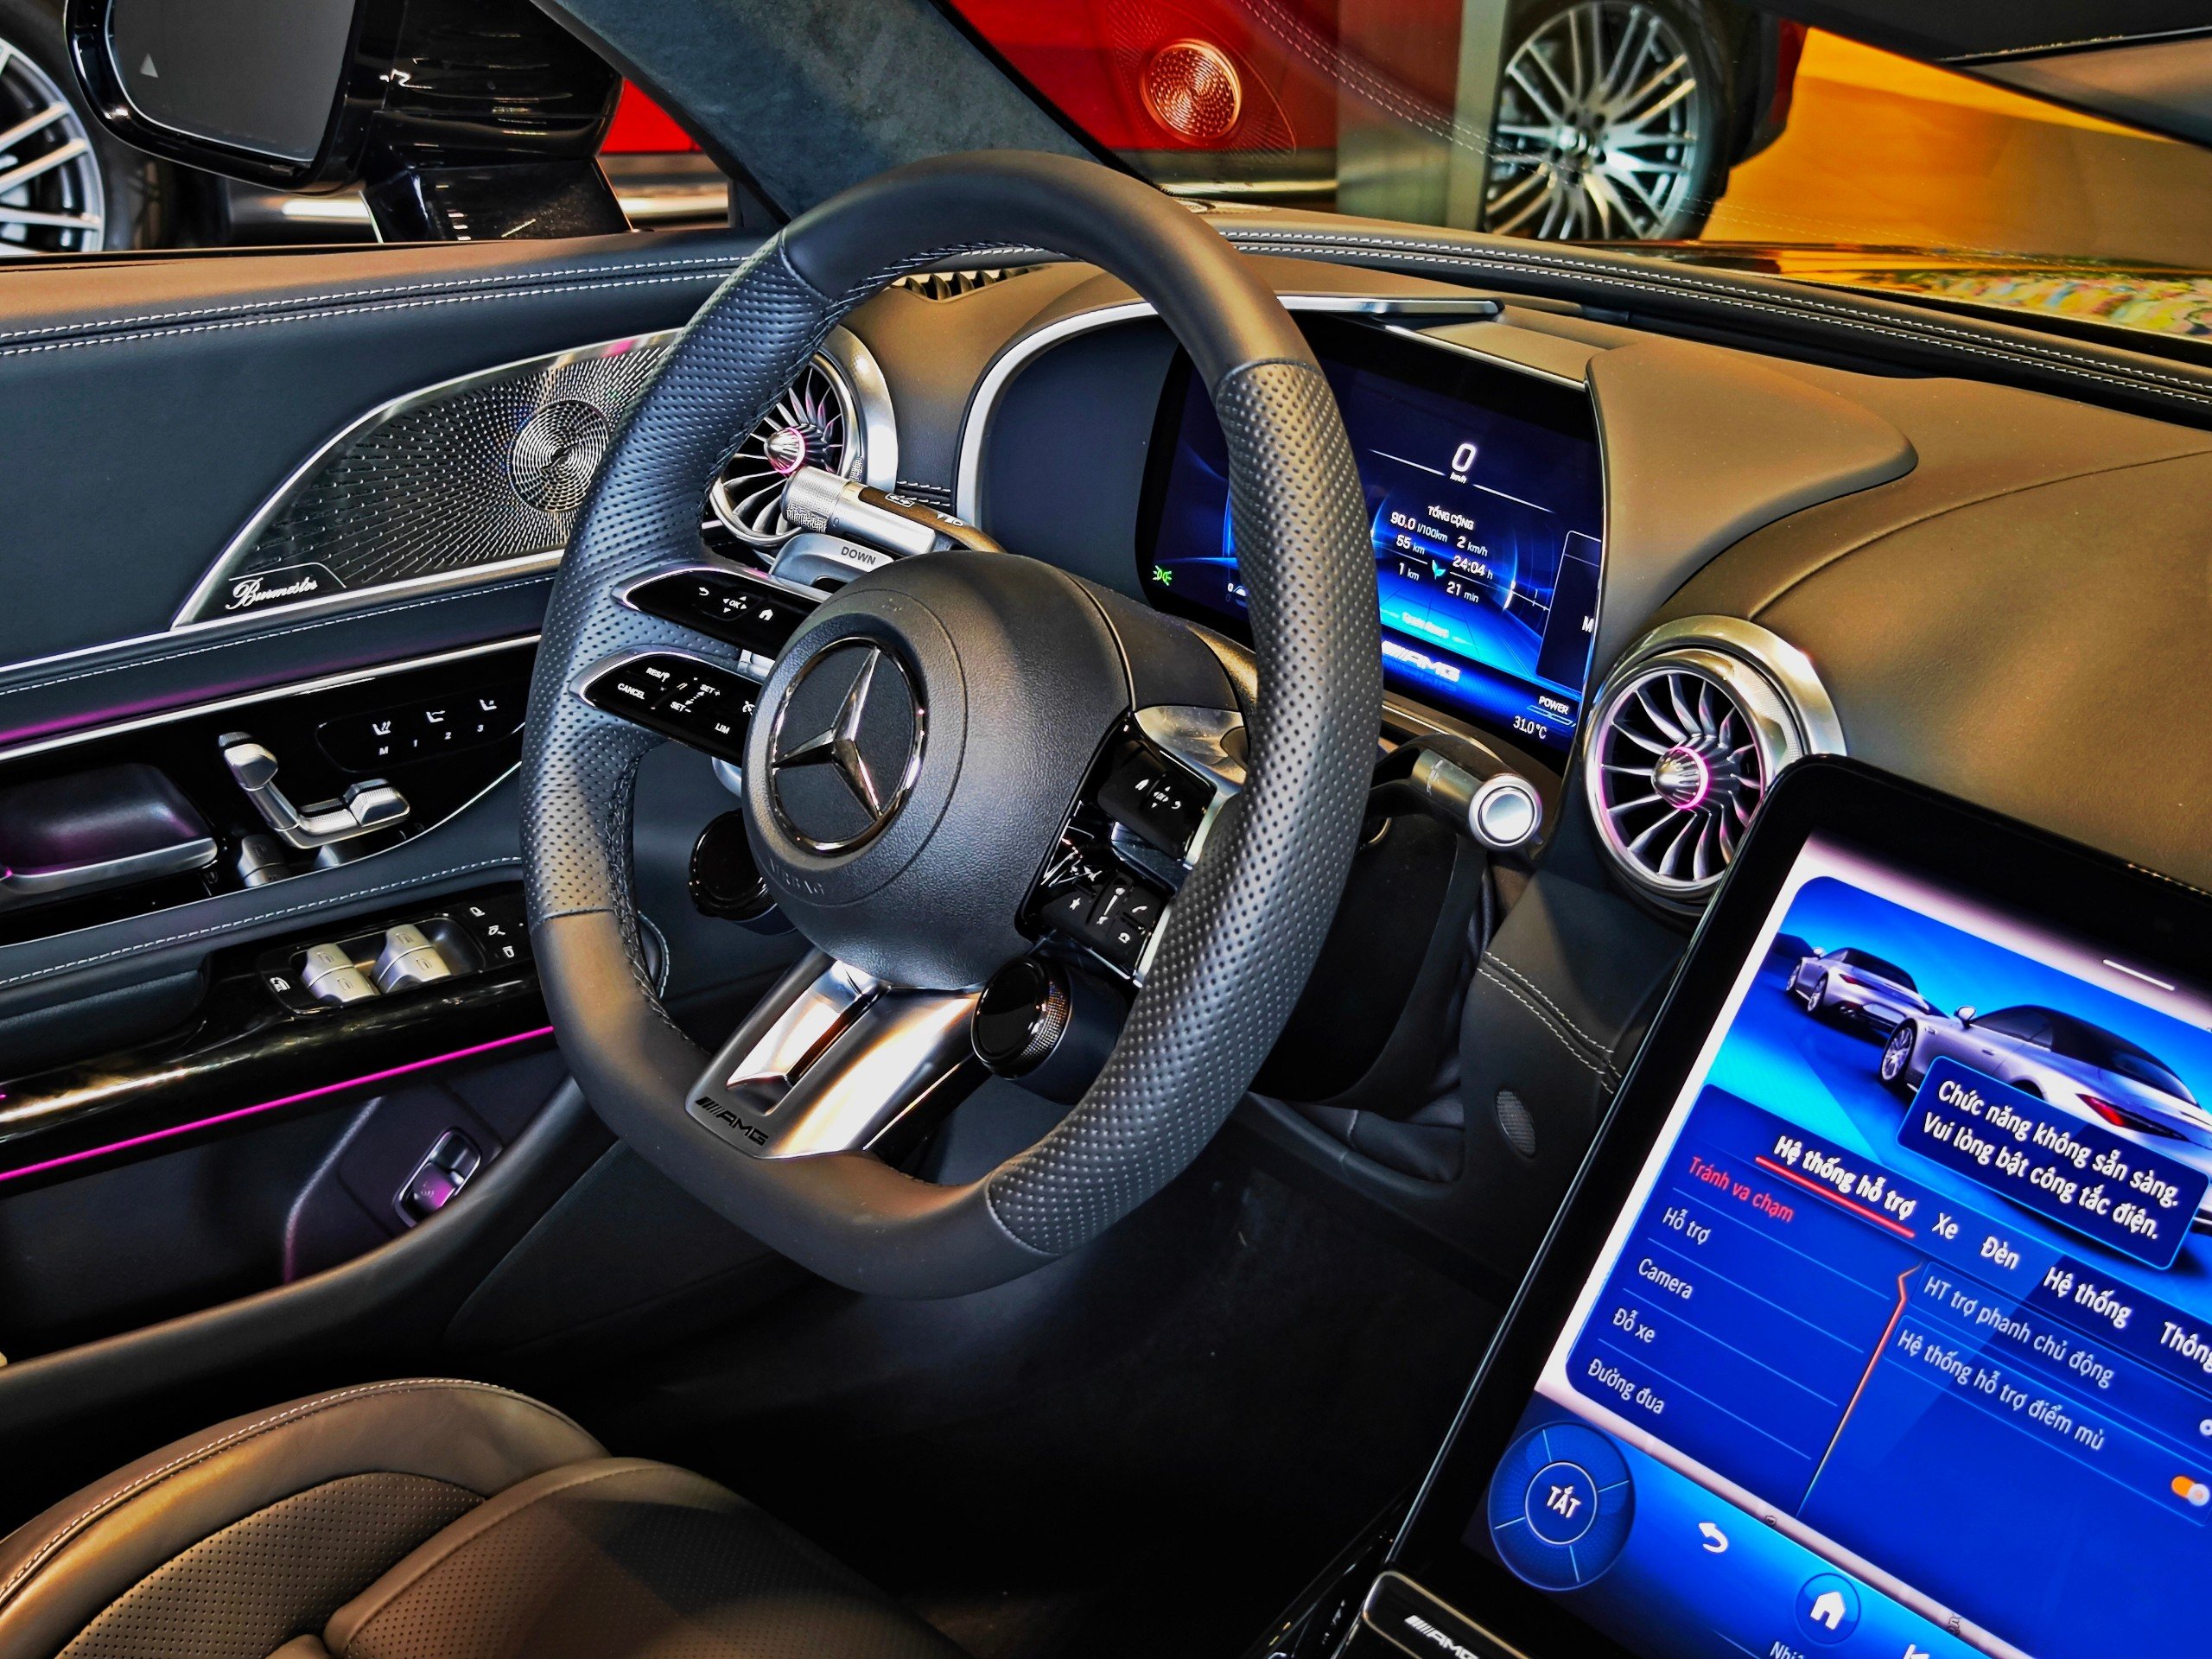 Chi tiết Mercedes-AMG SL 43 giá gần 7 tỷ đồng tại đại lý: Gói ngoại thất thể thao, nhiều công nghệ hiện đại đấu Porsche 911- Ảnh 9.